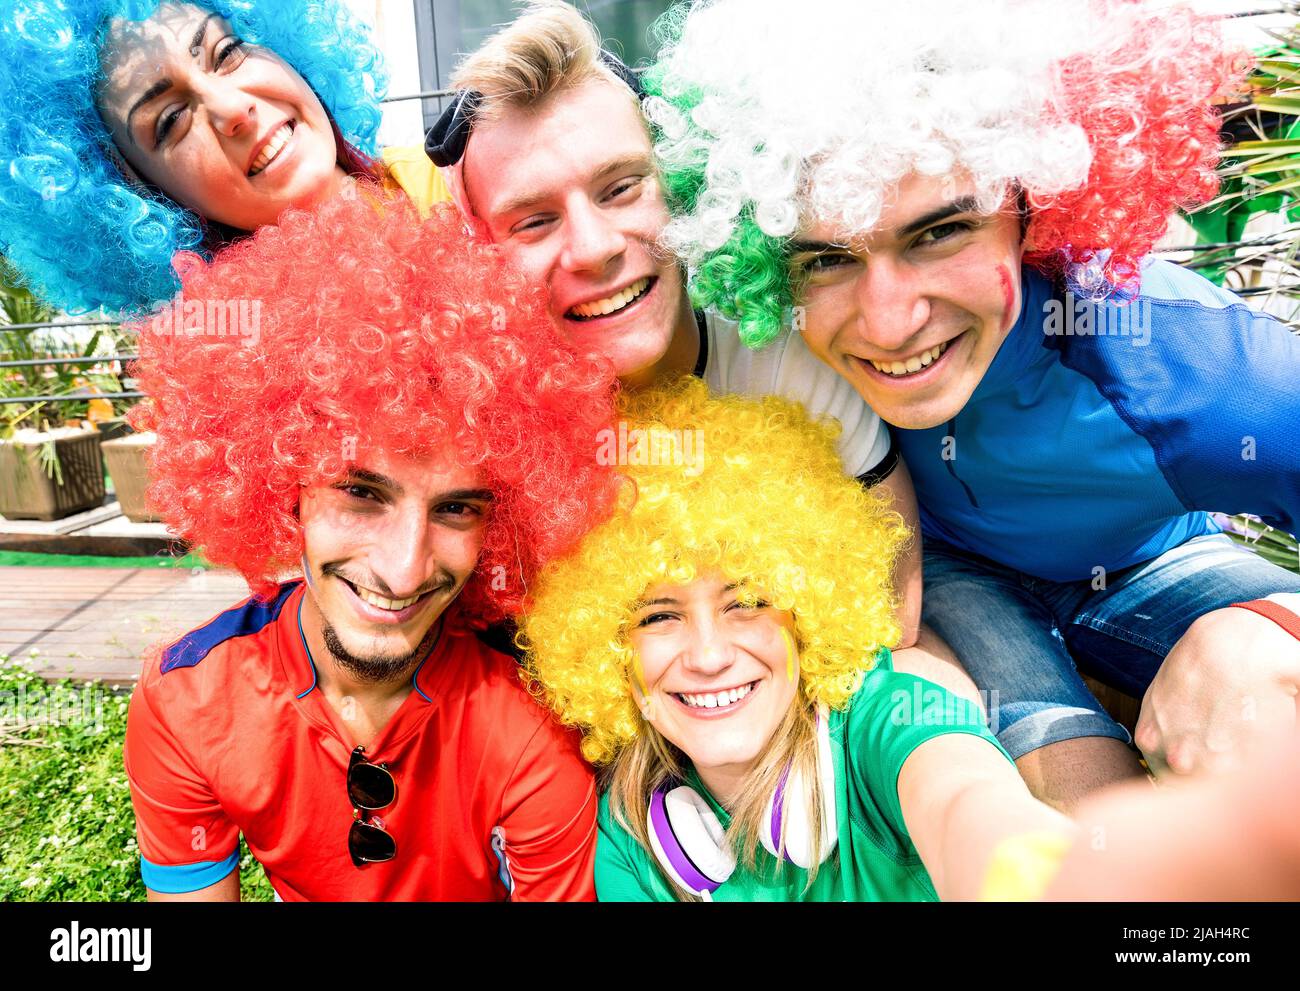 Aficionados al fútbol amigos tomando selfie después de un partido de la copa de fútbol colgando juntos - grupo de jóvenes con camisetas multicolores Foto de stock